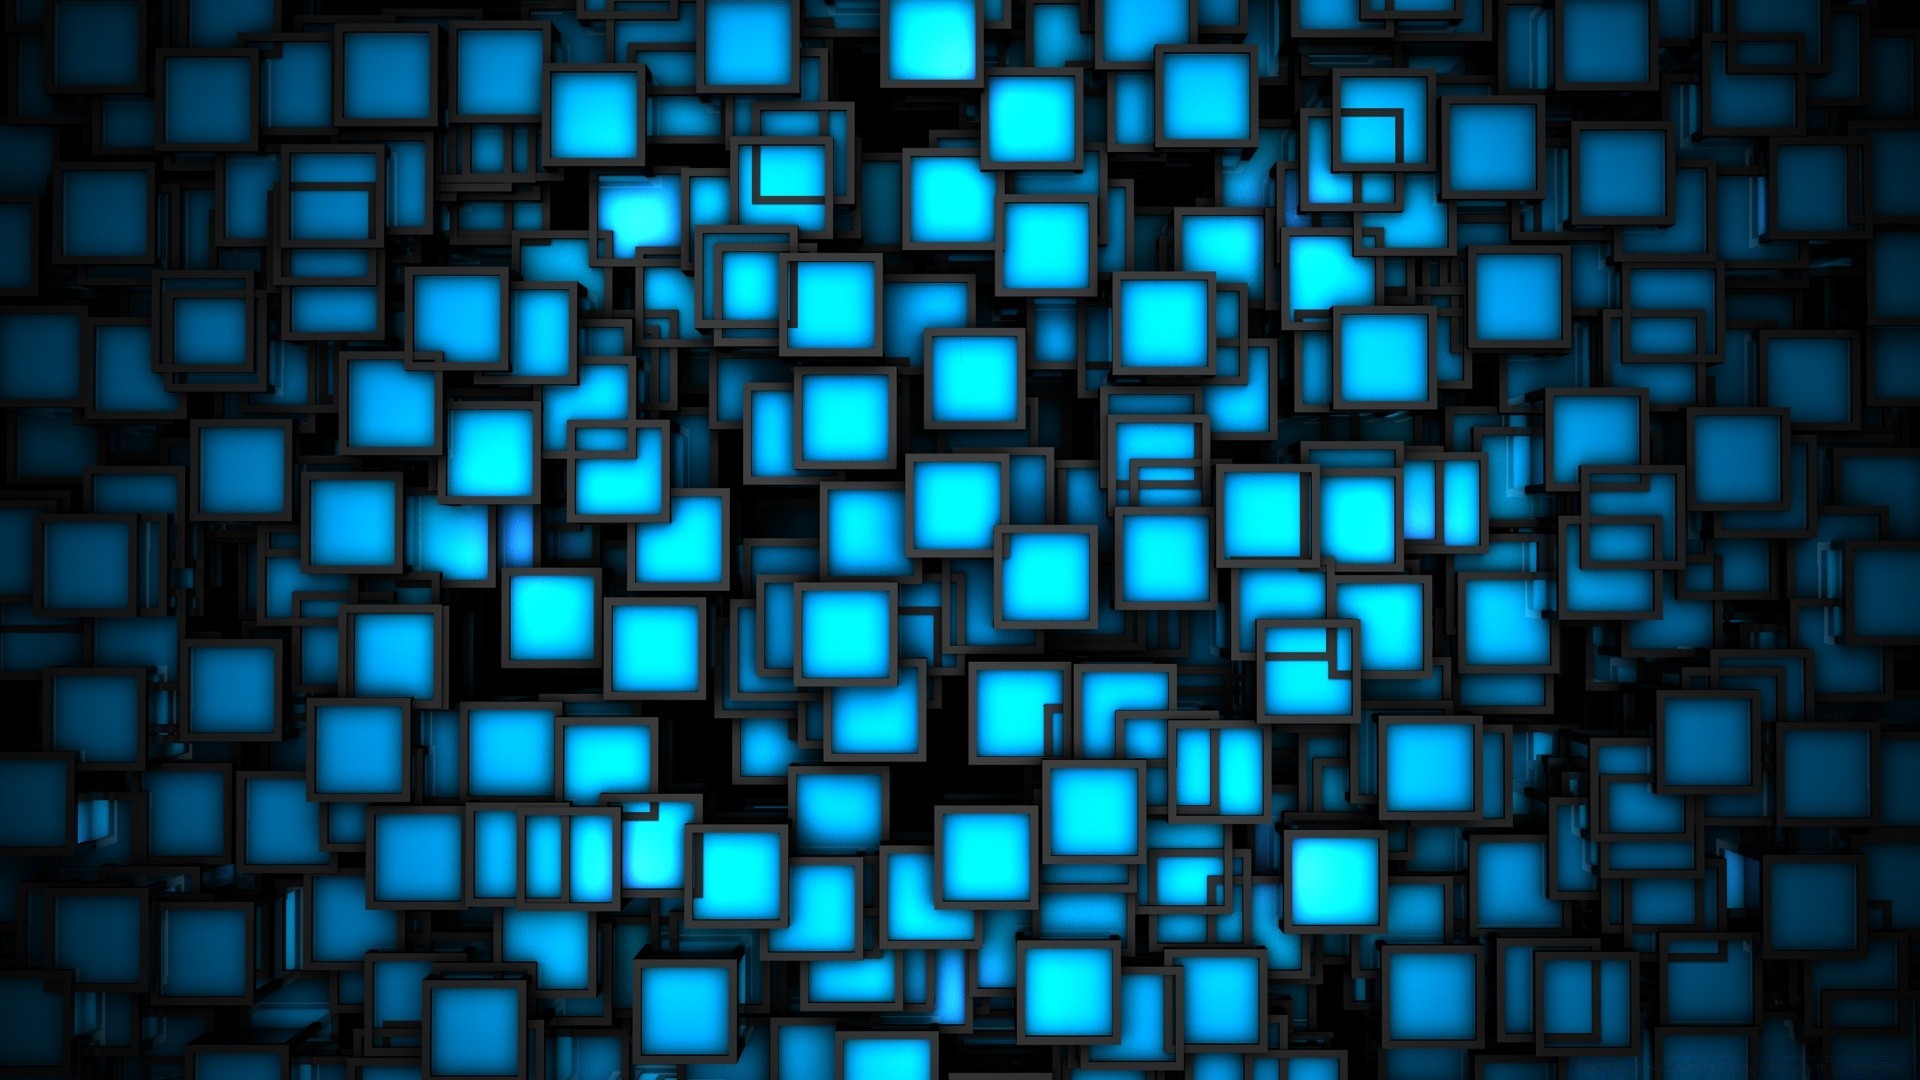 креатив дизайн интернет изображения площадь обои фон компьютер аннотация рабочего стола шаблон современные текстура мозаика формы футуристический геометрические яркий технология иллюстрация всемирная паутина